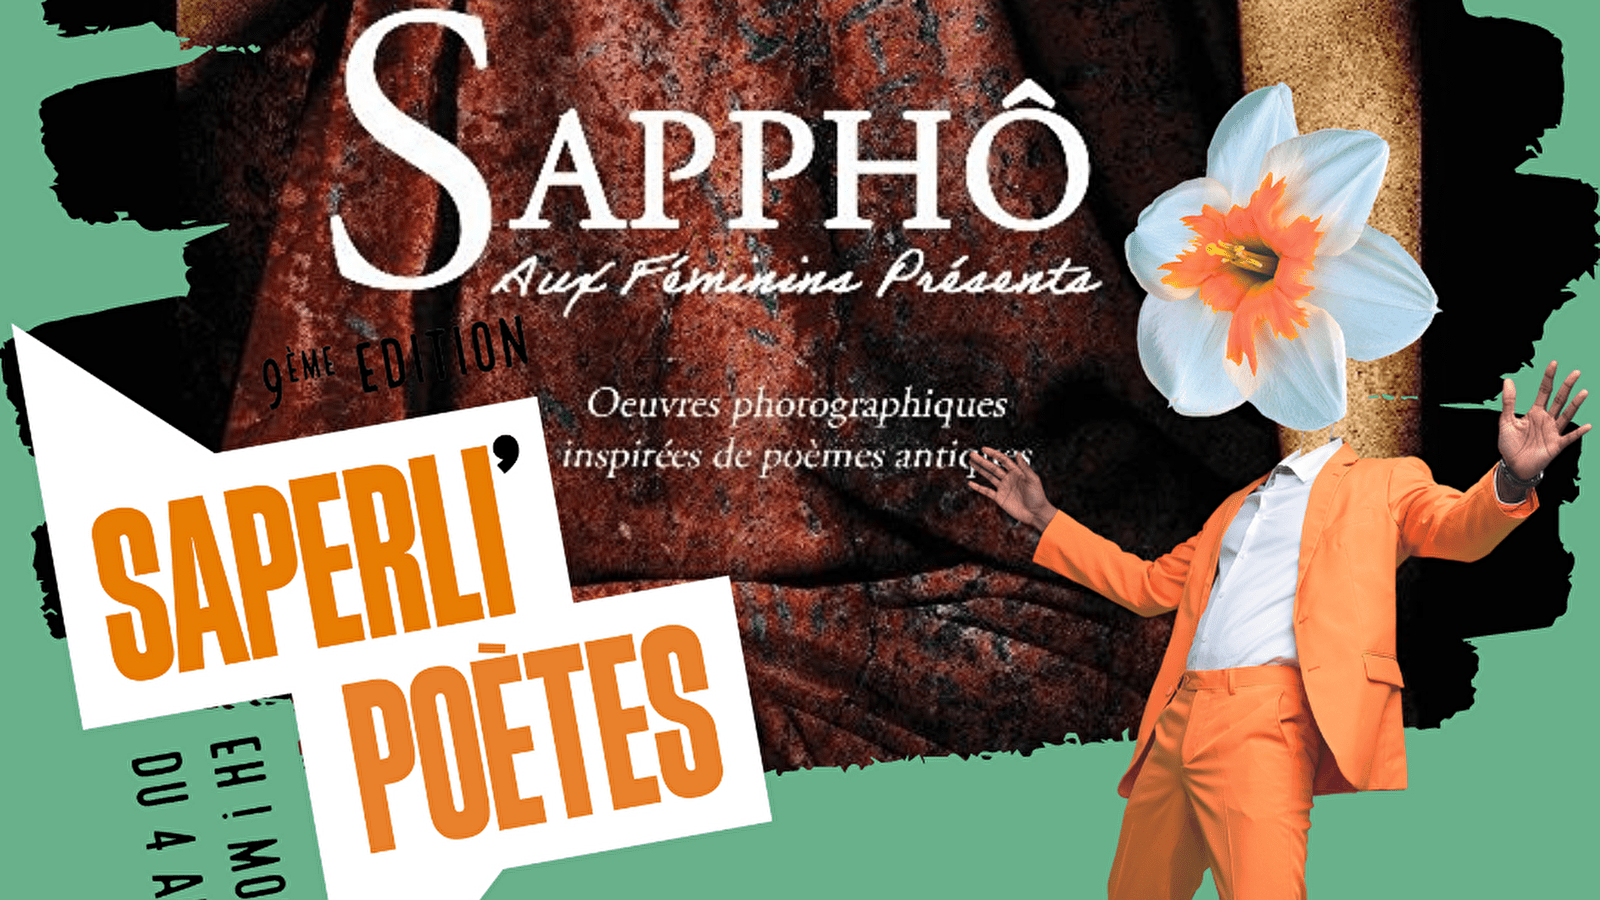 Saperli'poètes - Sapphô, aux féminins présents exhibition